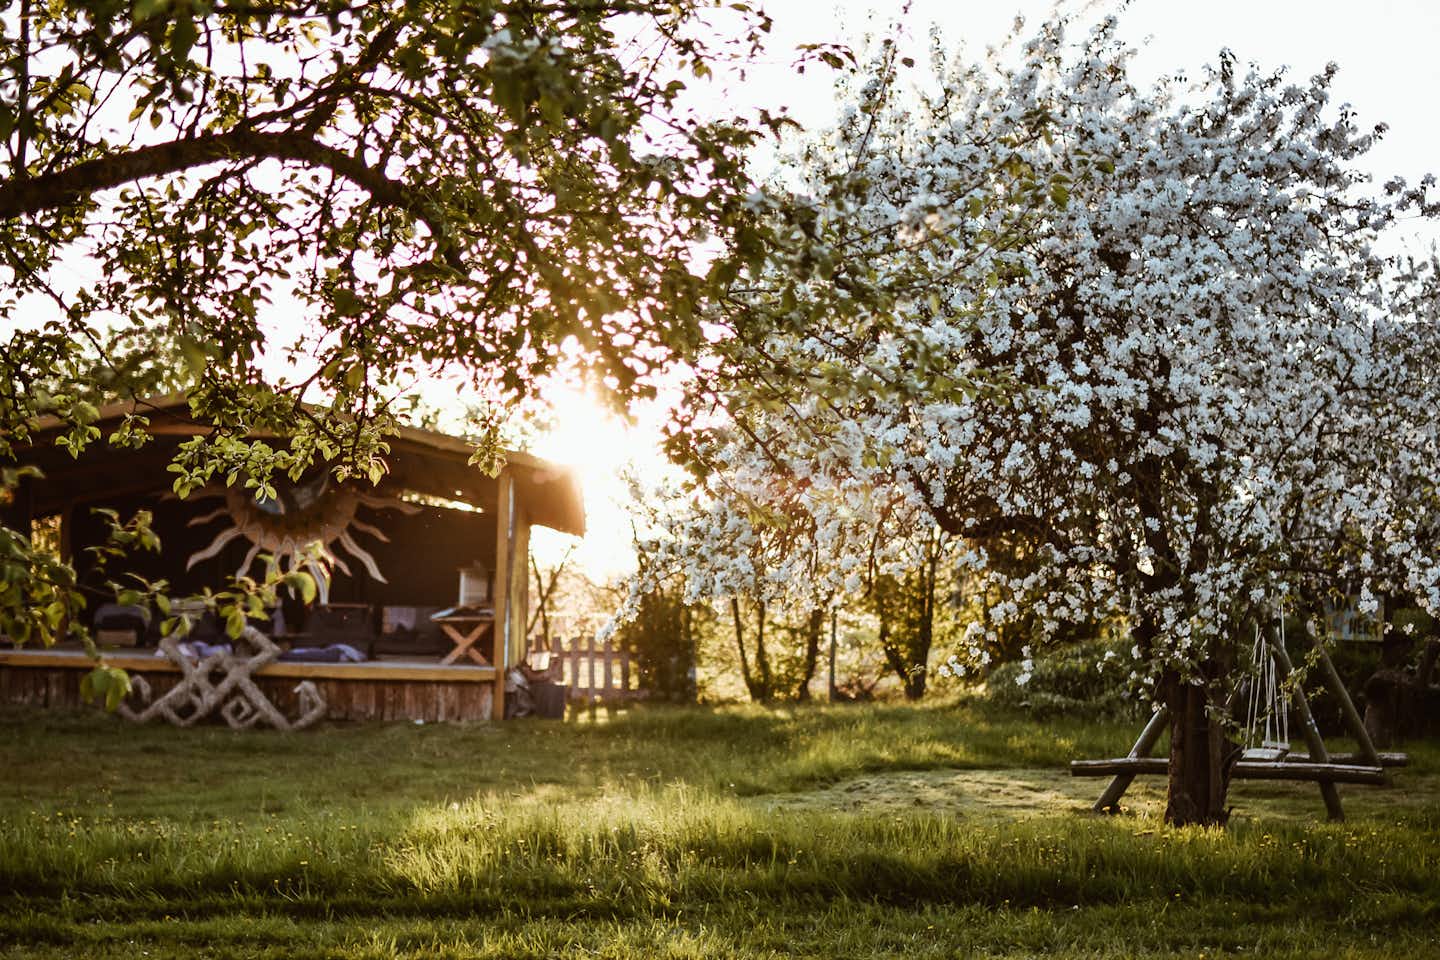 Sunny Nights Camping - Garten auf dem Campingplatz mit blühenden Bäumen, Schaukel und einem Pavillon im Hintergrund